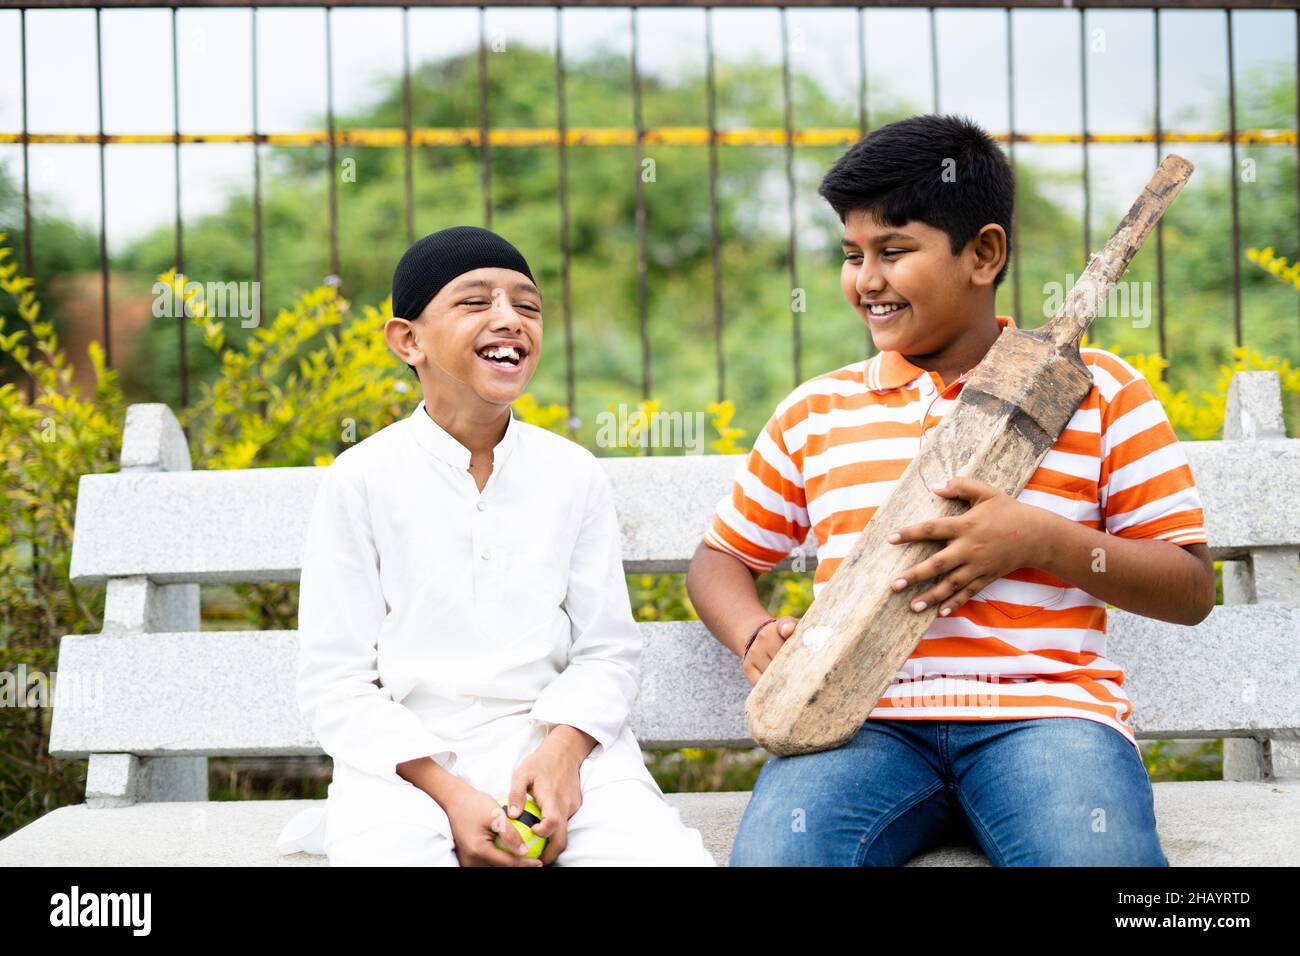 Glückliche indische multiethnische Kinder sprechen über Cricket mit Fledermaus und Ball sitzen im Park - Konzept der Kindheit Freundschaft, Urlaub, Urlaub Stockfoto